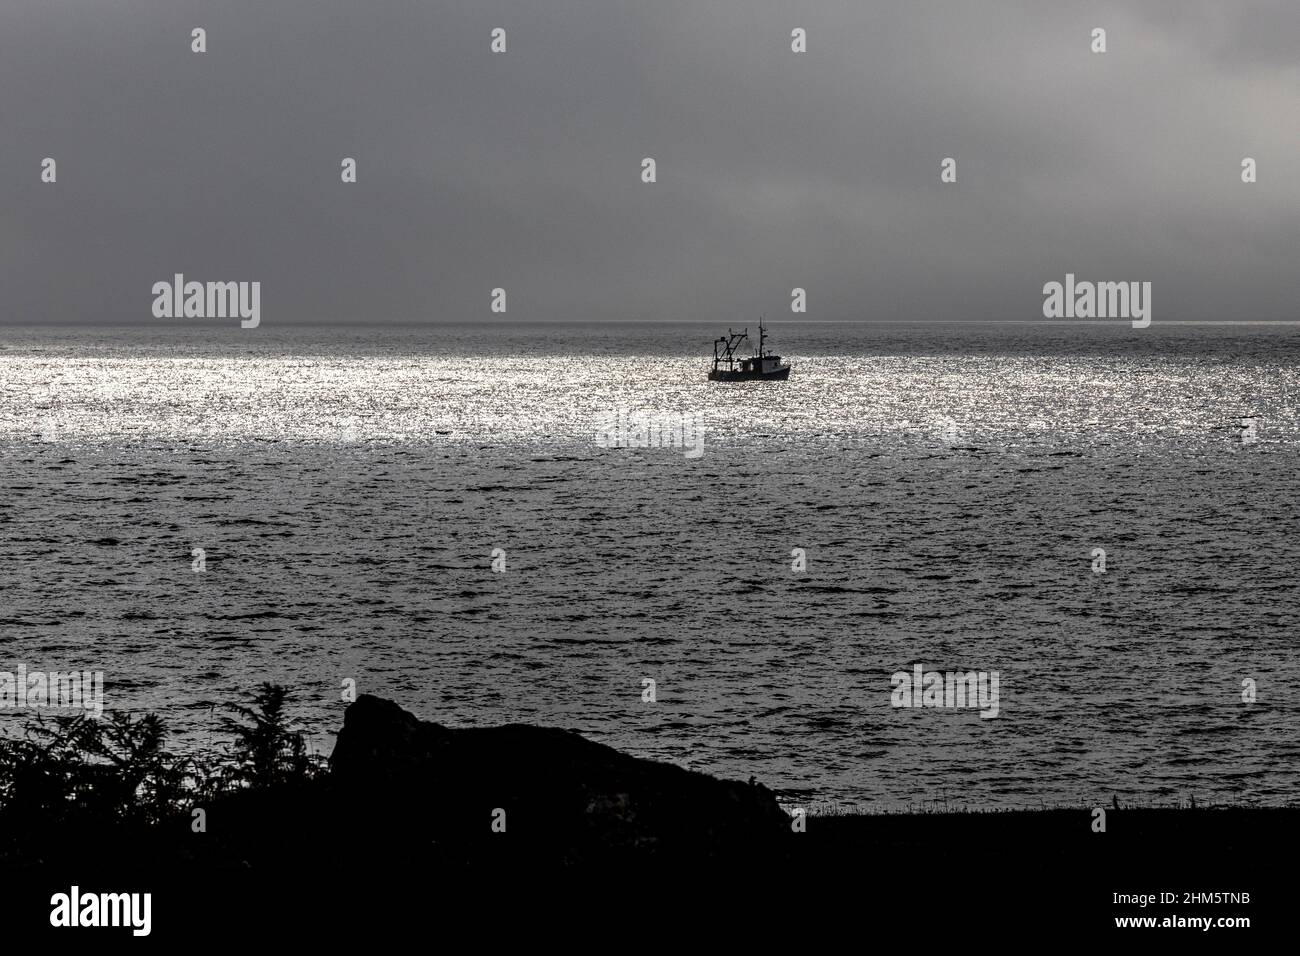 Ein Küstenfischerboot, das an einem bewölkten Tag in der Ardnoquer Bay auf der Kintyre Peninsula, Argyll & Bute, Schottland, in einem Fleck Sonnenlicht gefangen wurde Stockfoto